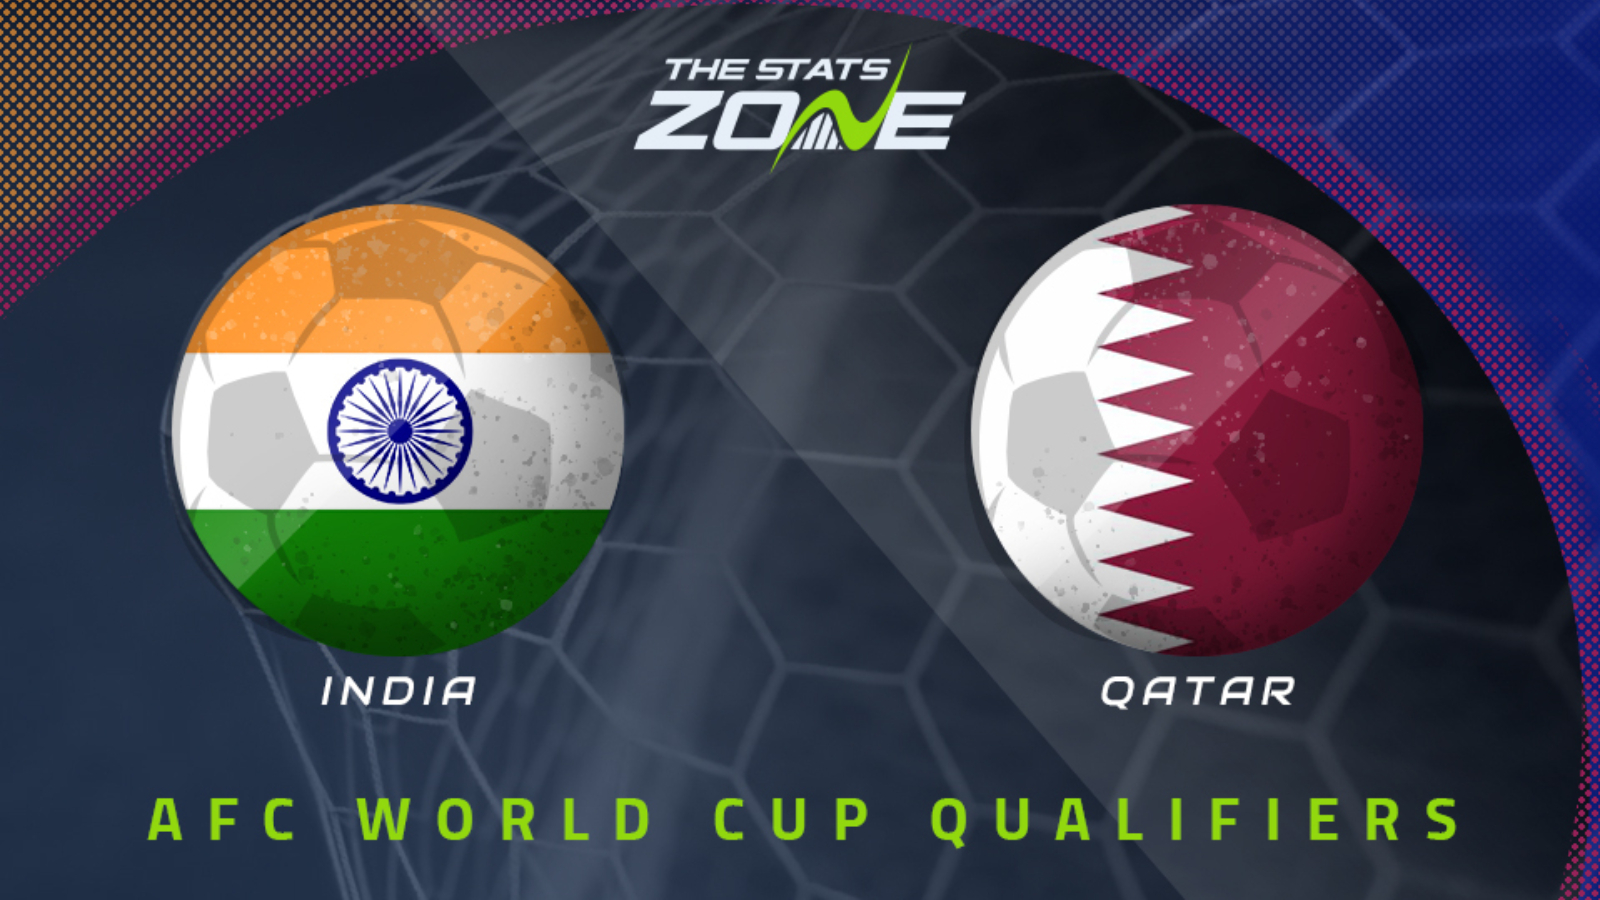 India vs Qatar 21/11/2023 13:30 Futebol eventos e resultados